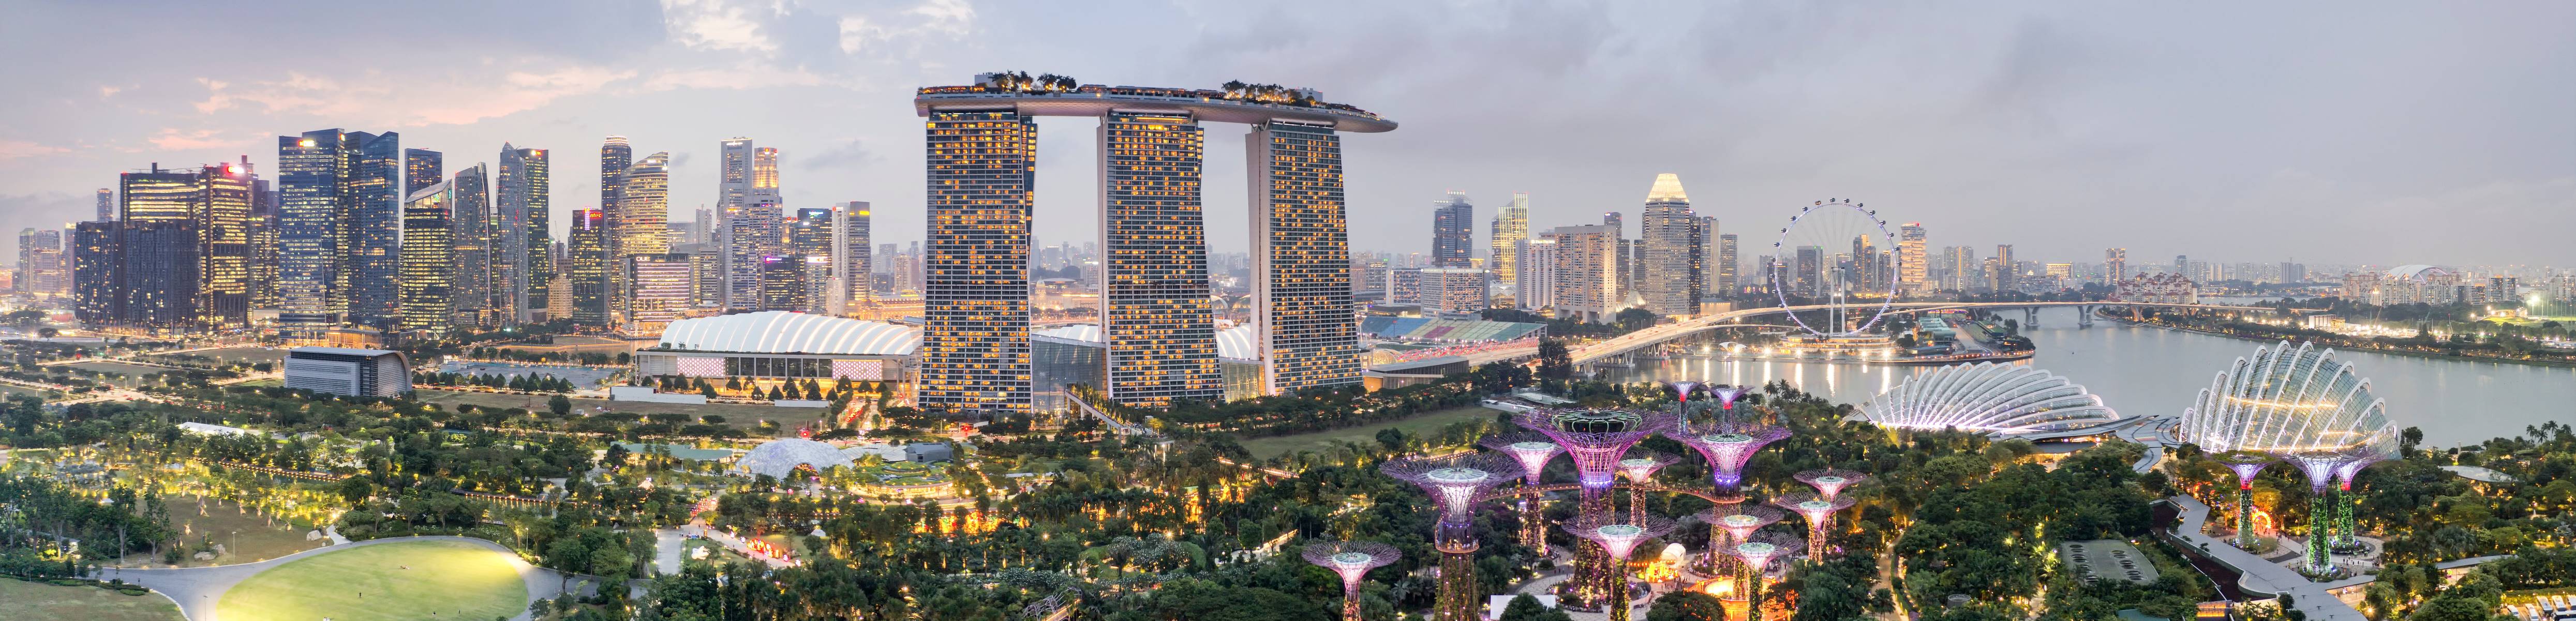 singapore skyline 2_landingpage_medium